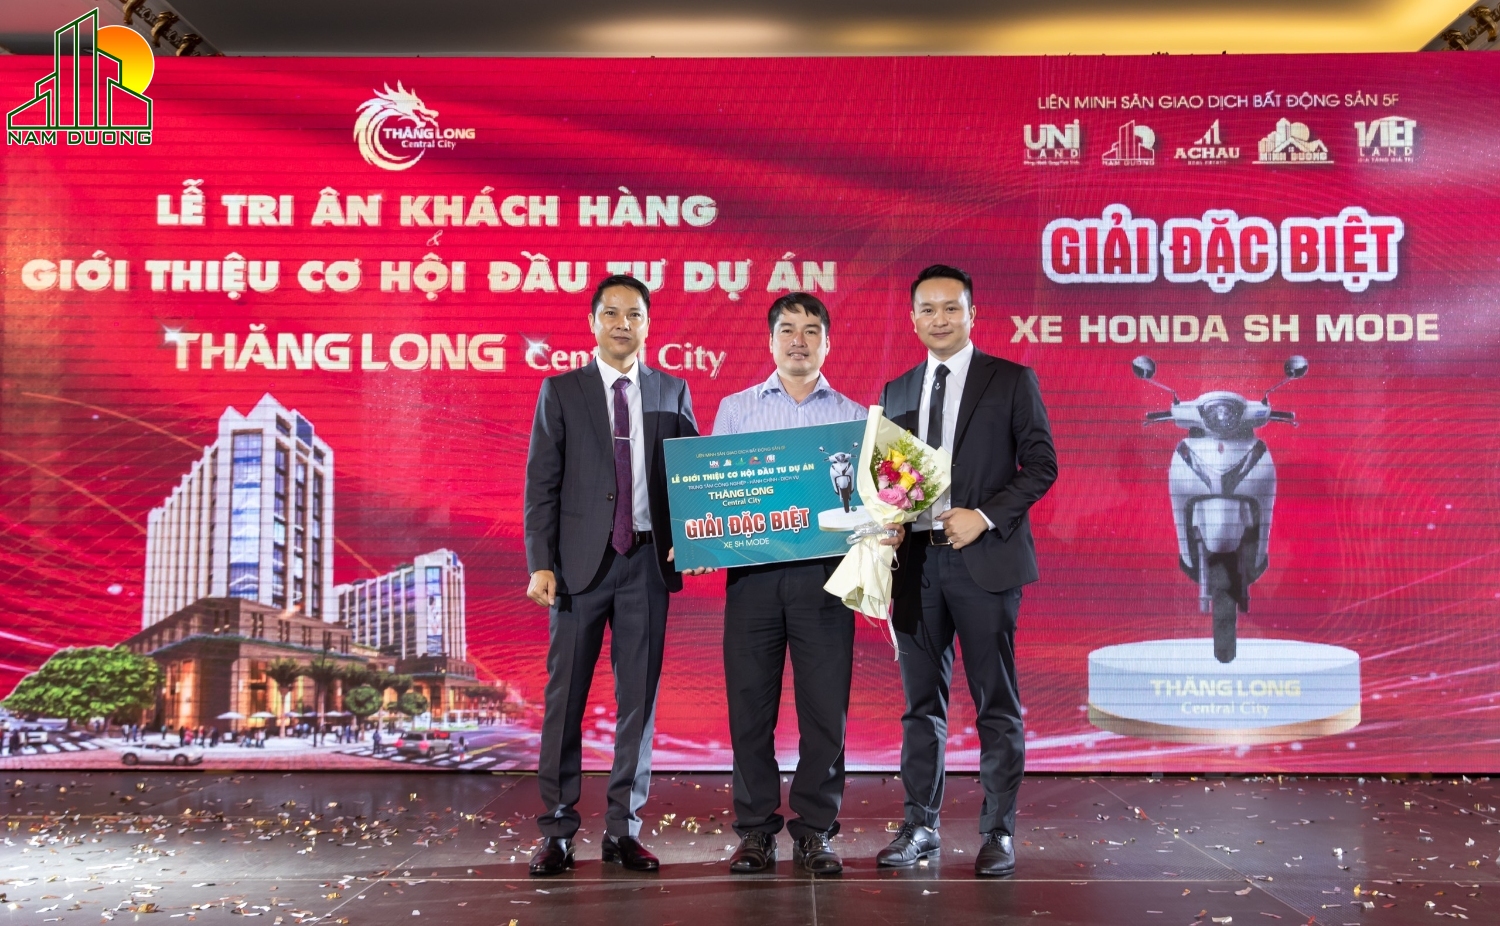 lễ giới thiệu Thăng Long Central City năm 2021 (1)